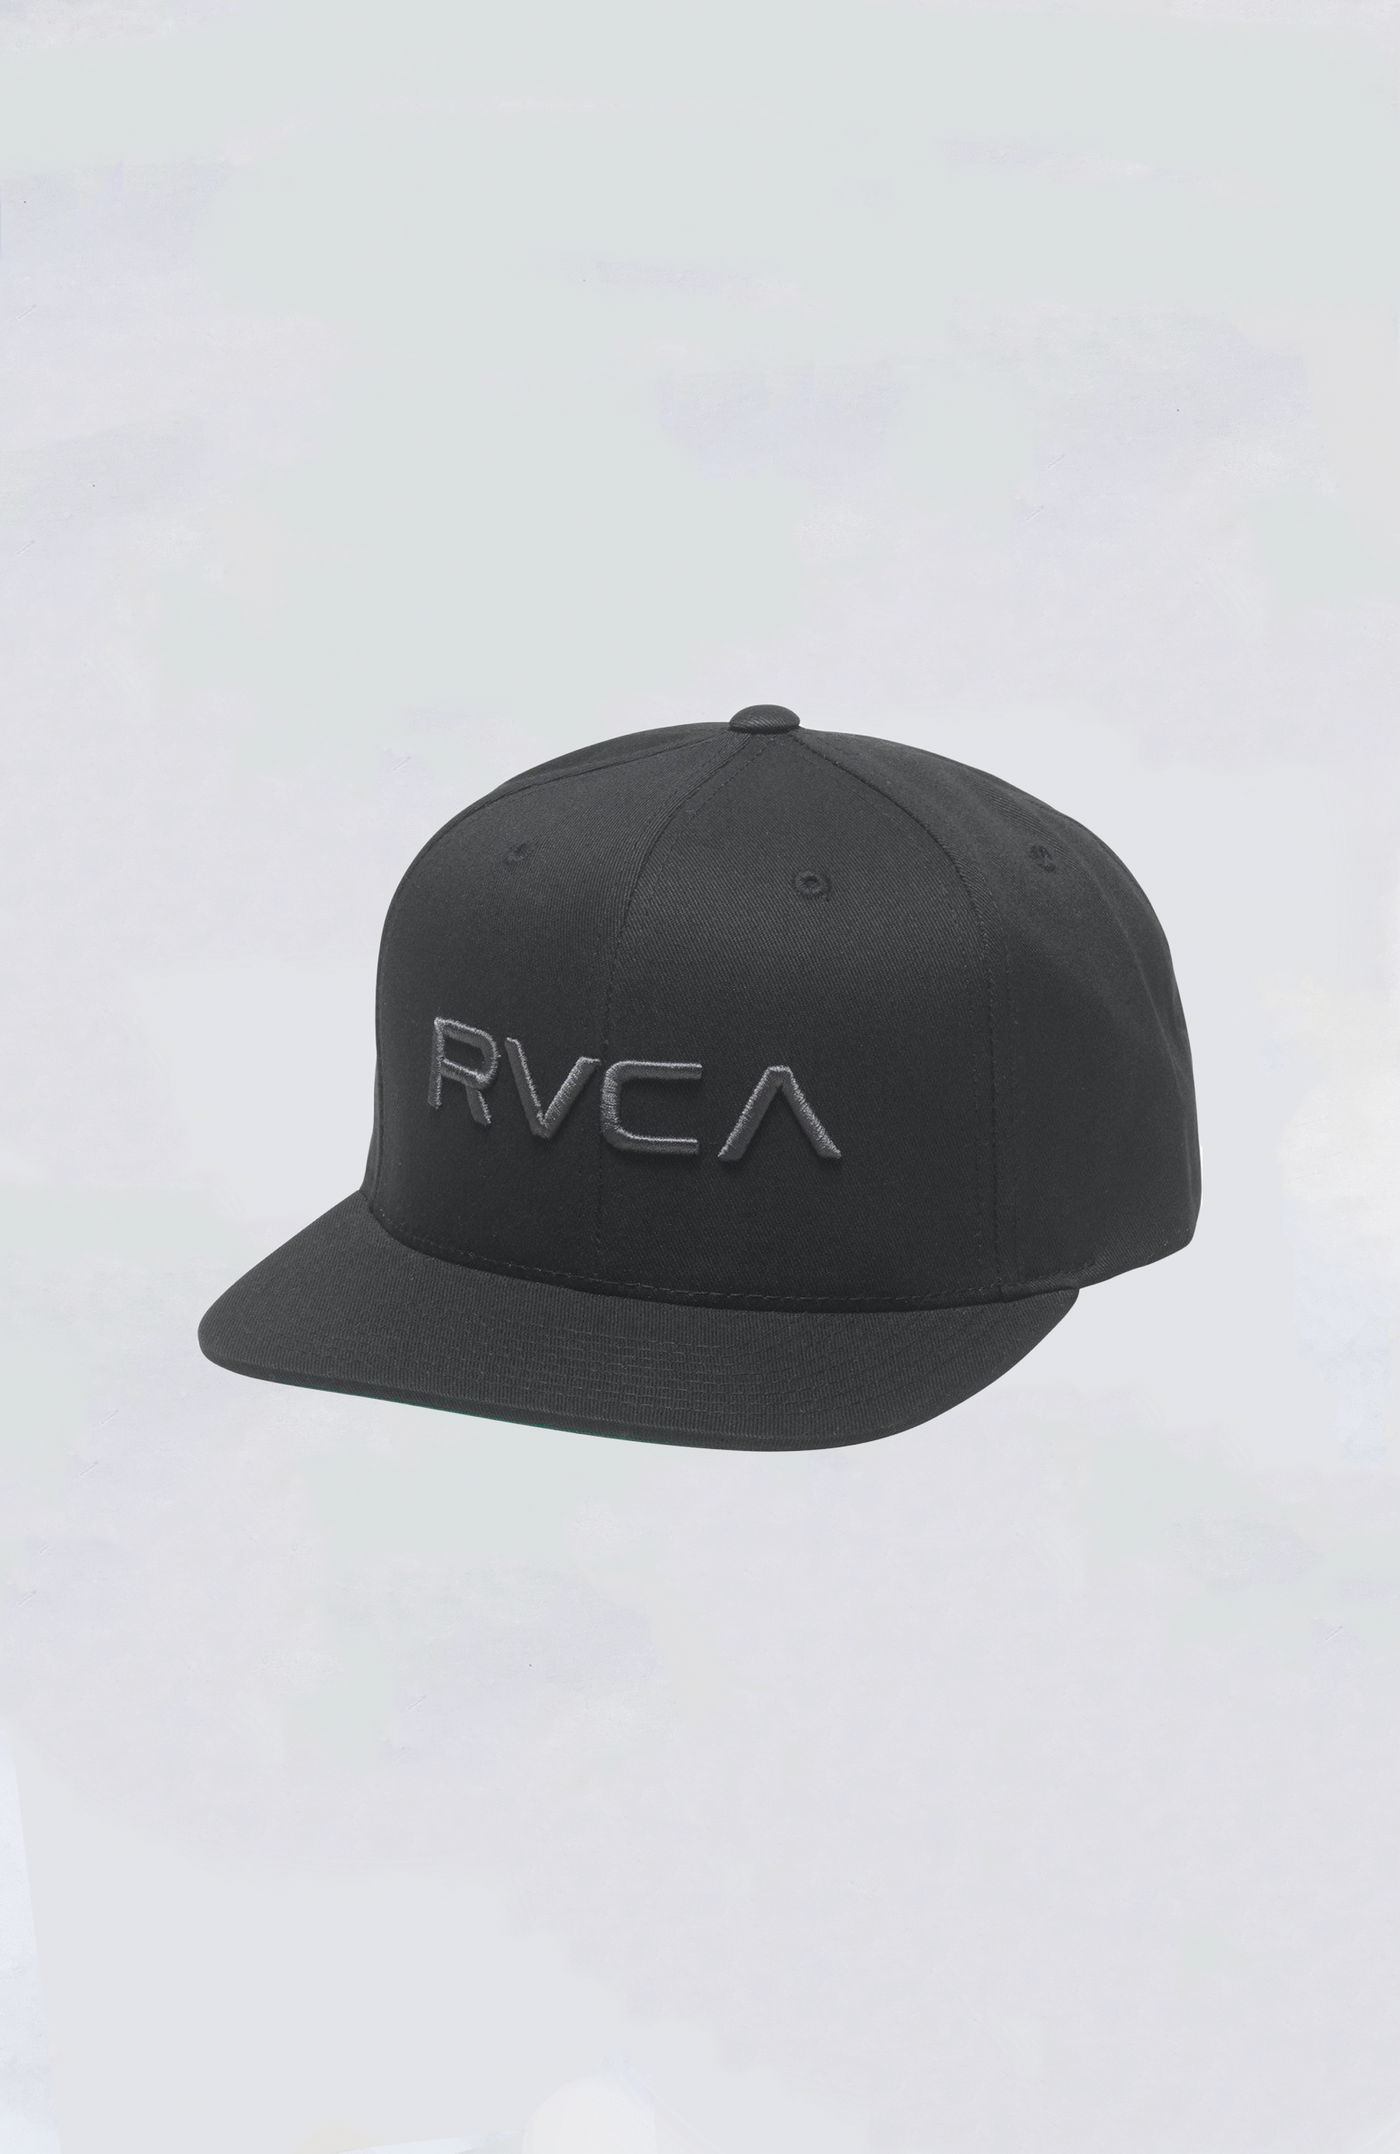 RVCA Snapback Hat - RVCA Twill Snapback II